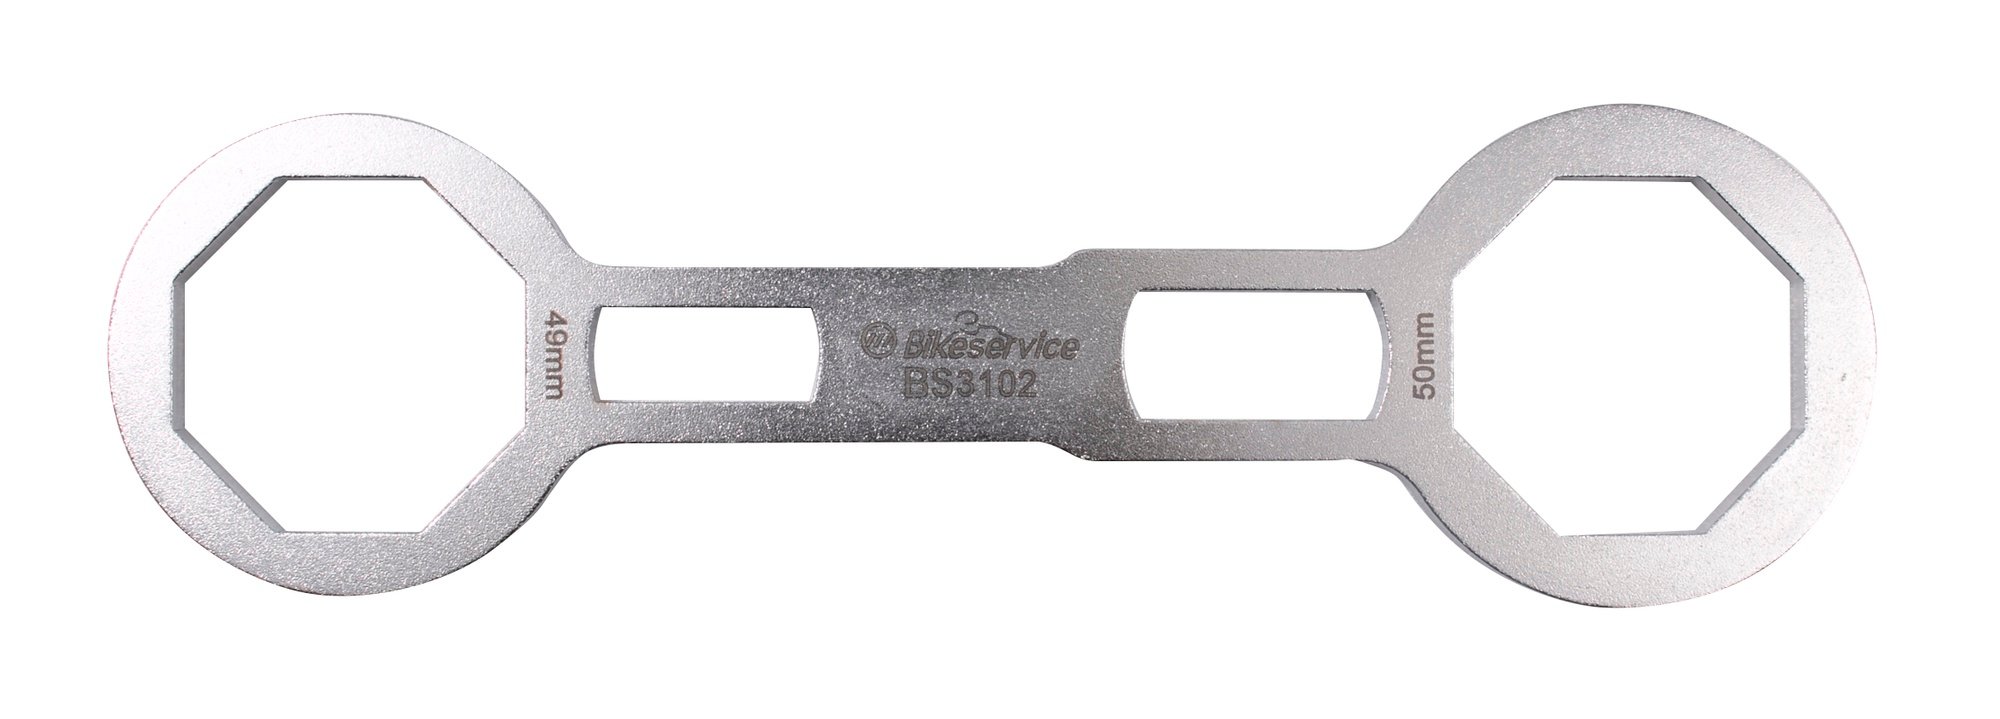 Obrázek produktu uzavřený osmihranný klíč na přední vidlice (49 x 50 mm), BIKESERVICE BS3102